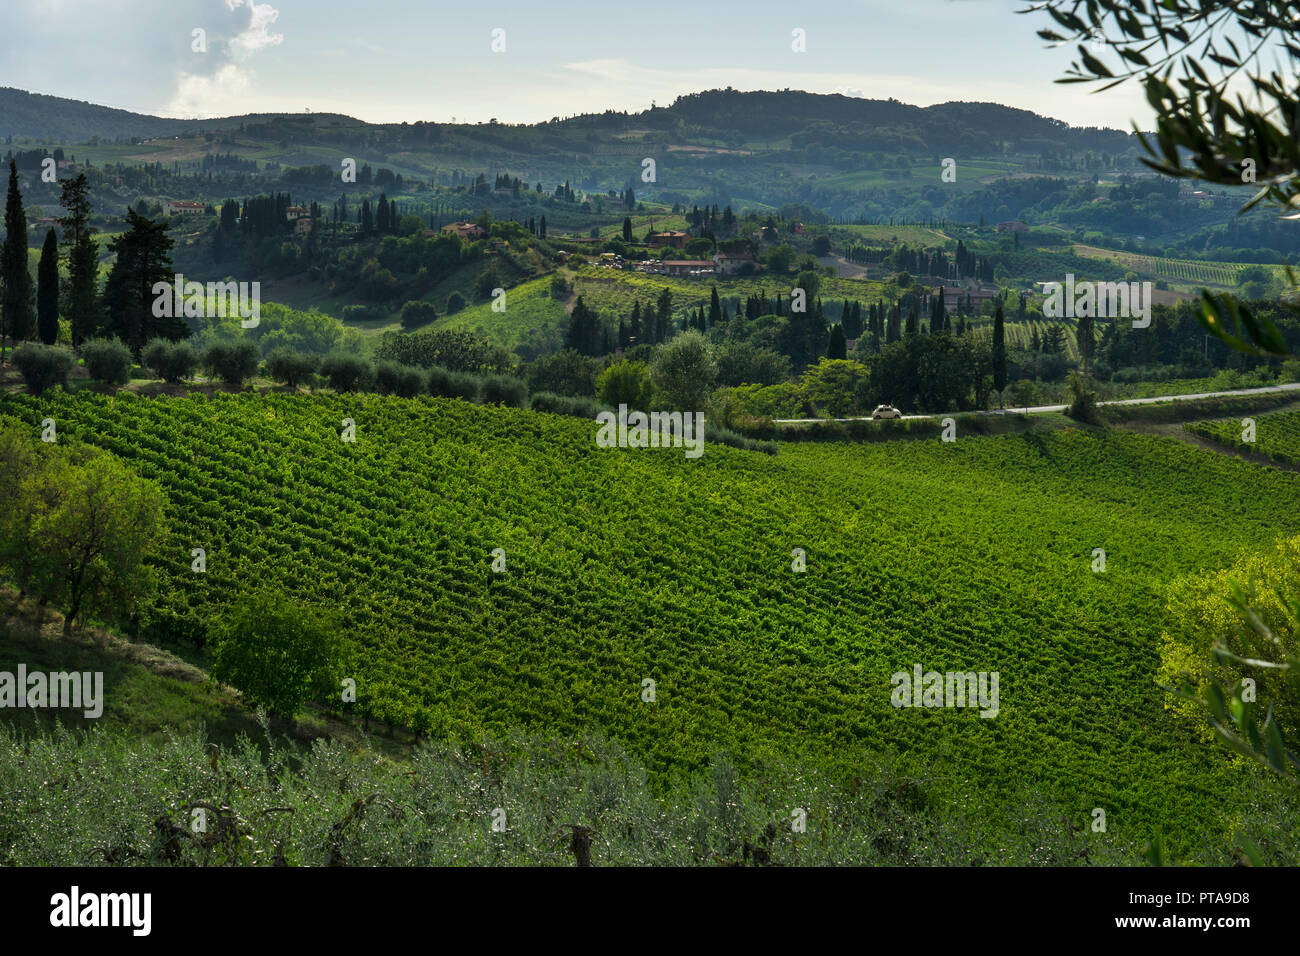 Los olivares y los viñedos y el paisaje de la toscana alrededor de San Gimignano, Toscana, Italia, Europa Foto de stock